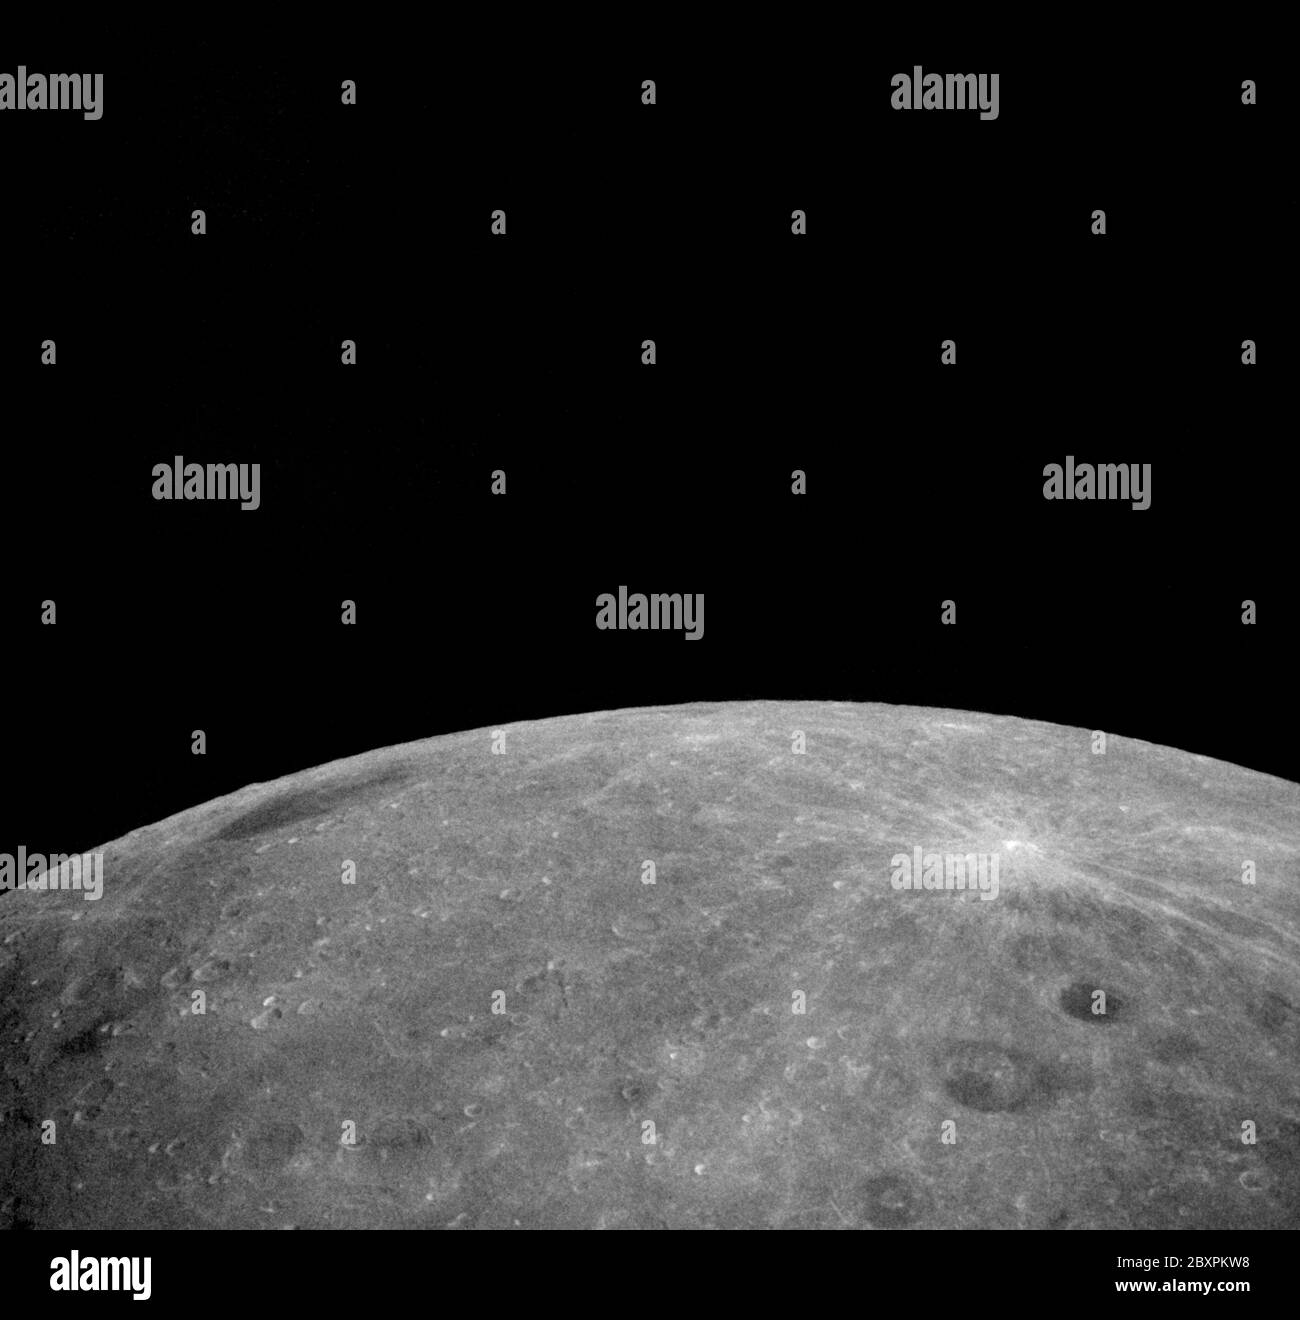 AS08-18-2883 - Apollo 8 - Apollo 8 Missionsbild, Mond; Umfang und Inhalt: Die Originaldatenbank beschreibt dies wie folgt: Beschreibung: Apollo 8,Mond,Gauss,der dunkel unterladente Krater in der rechten unteren Ecke heißt Lomonossow und misst etwa 50 Satzmeilen im Durchmesser. Der hellstrahlende Krater wurde von den Russen Giordano Bruno genannt. Lomonosov liegt auf der lunaren Farside bei etwa 102 Grad östlicher Länge und 28 Grad nördlicher Breite. Camara Tilt-Modus: Hoch schräg (HO). Richtung Norden: Sonnenwinkel 28. Original Film Magazin wurde mit G. bezeichnet.Kameradaten: 70mm Hasselblad. Filmtyp: Ko Stockfoto